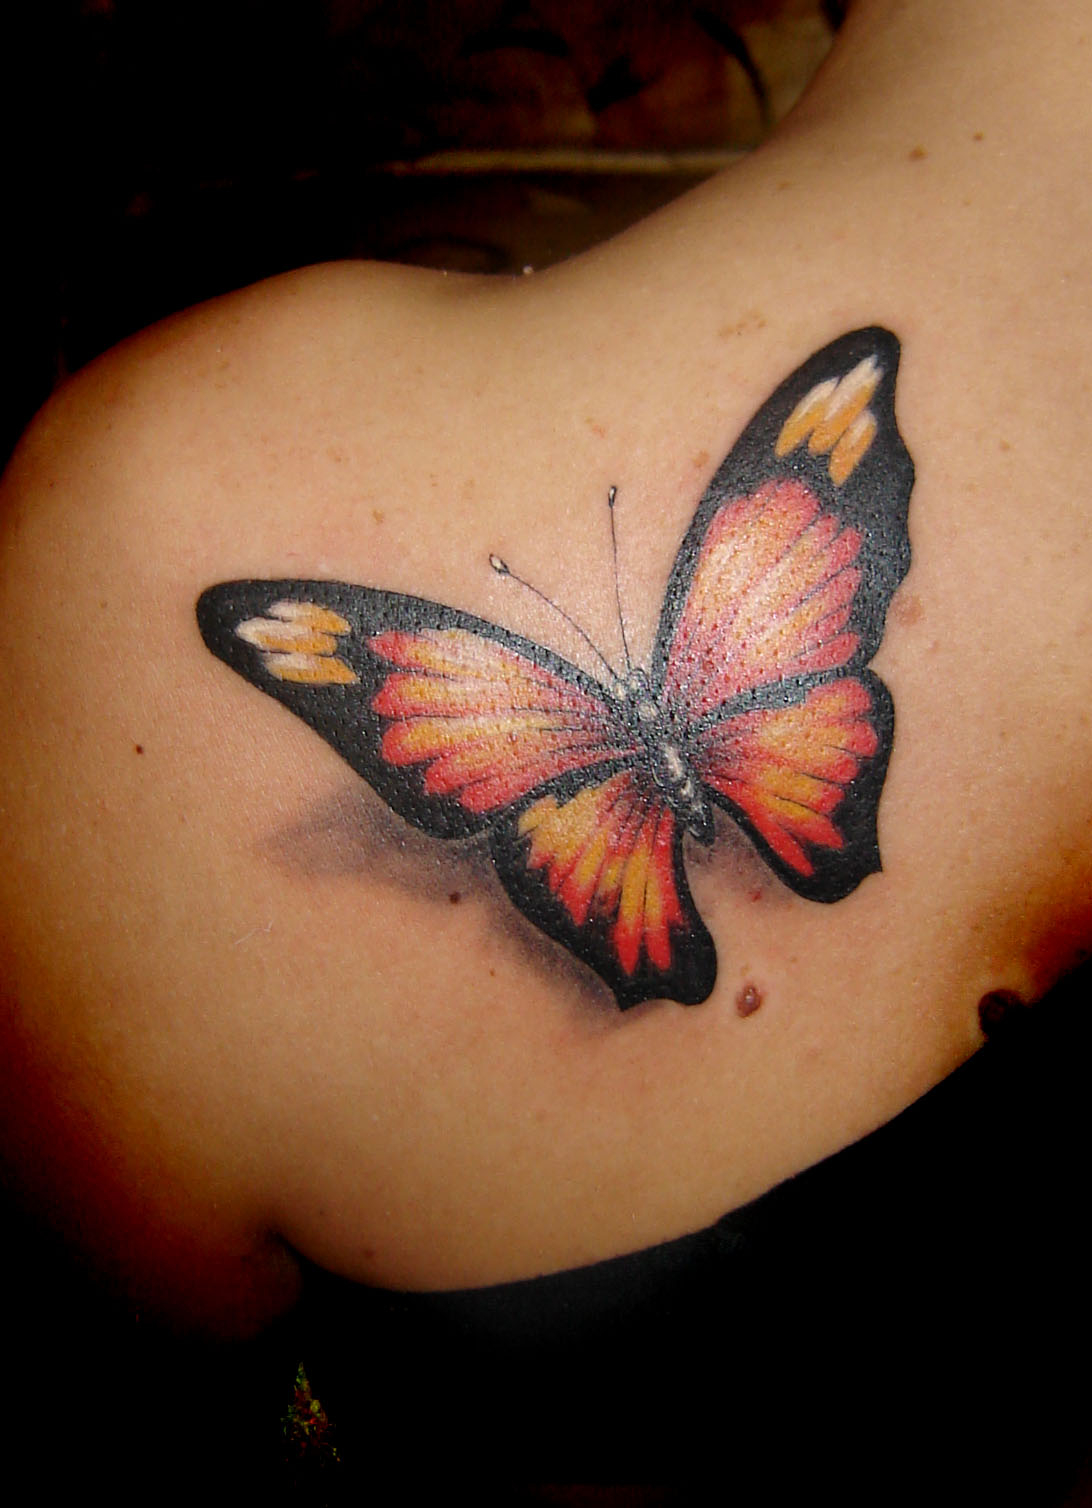 Art Sci Beautiful Butterfly Tattoo Designs regarding dimensions 1092 X 1508